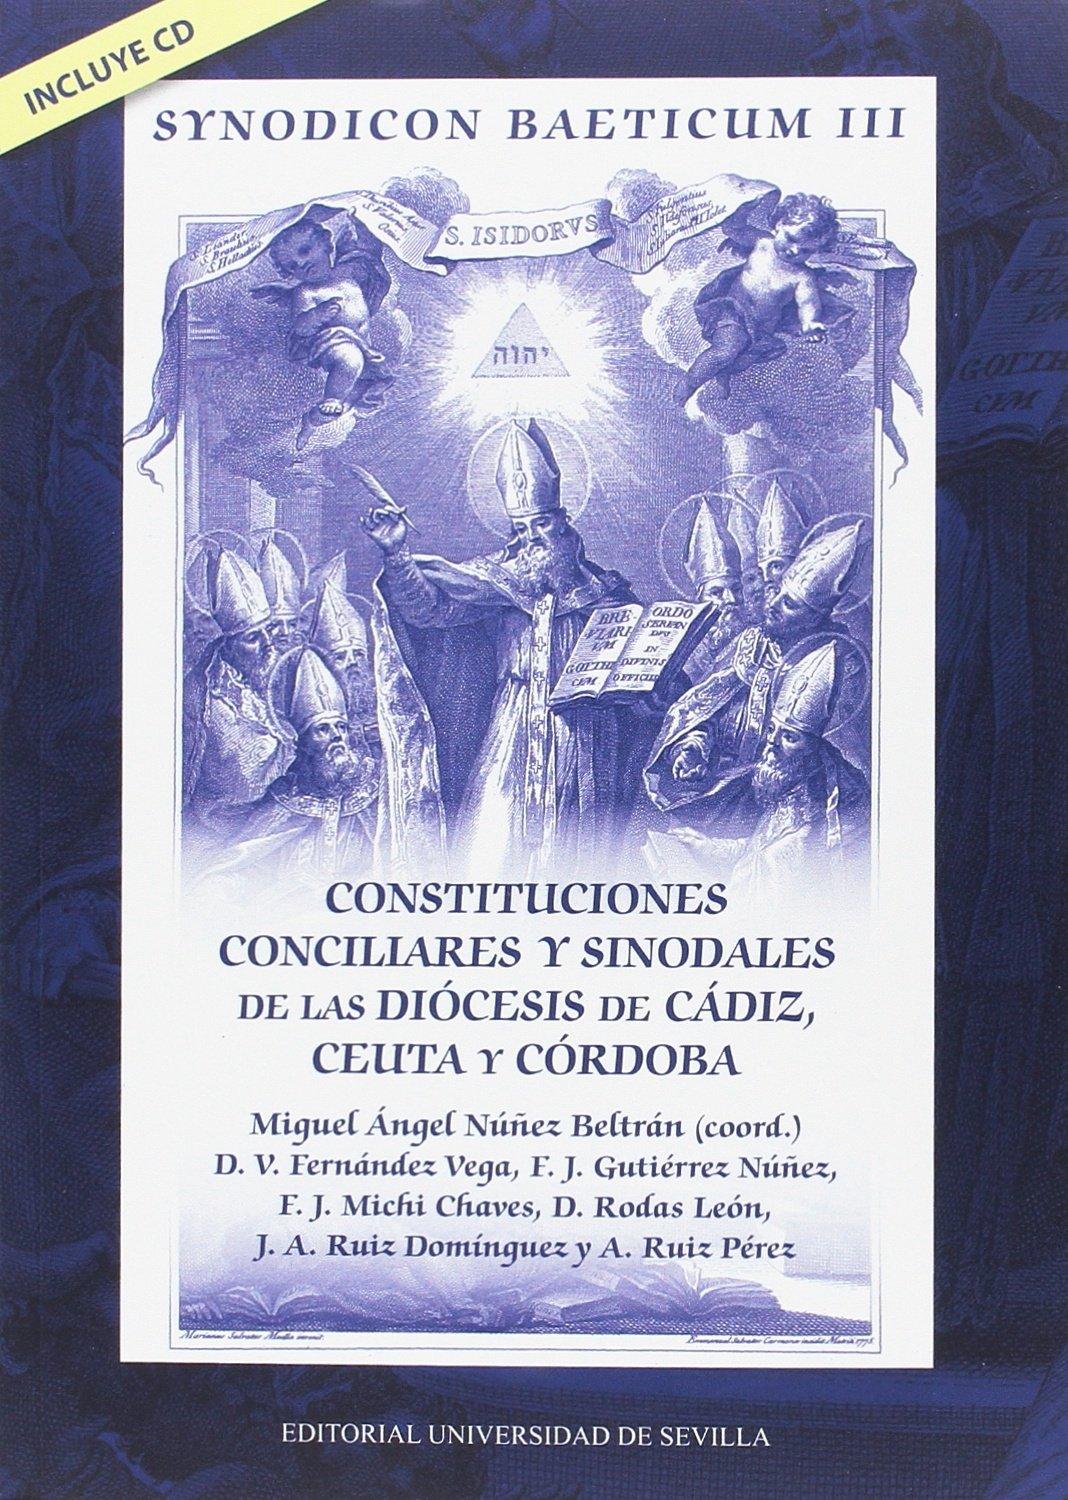 Imagen de portada del libro Synodicon Baeticum III